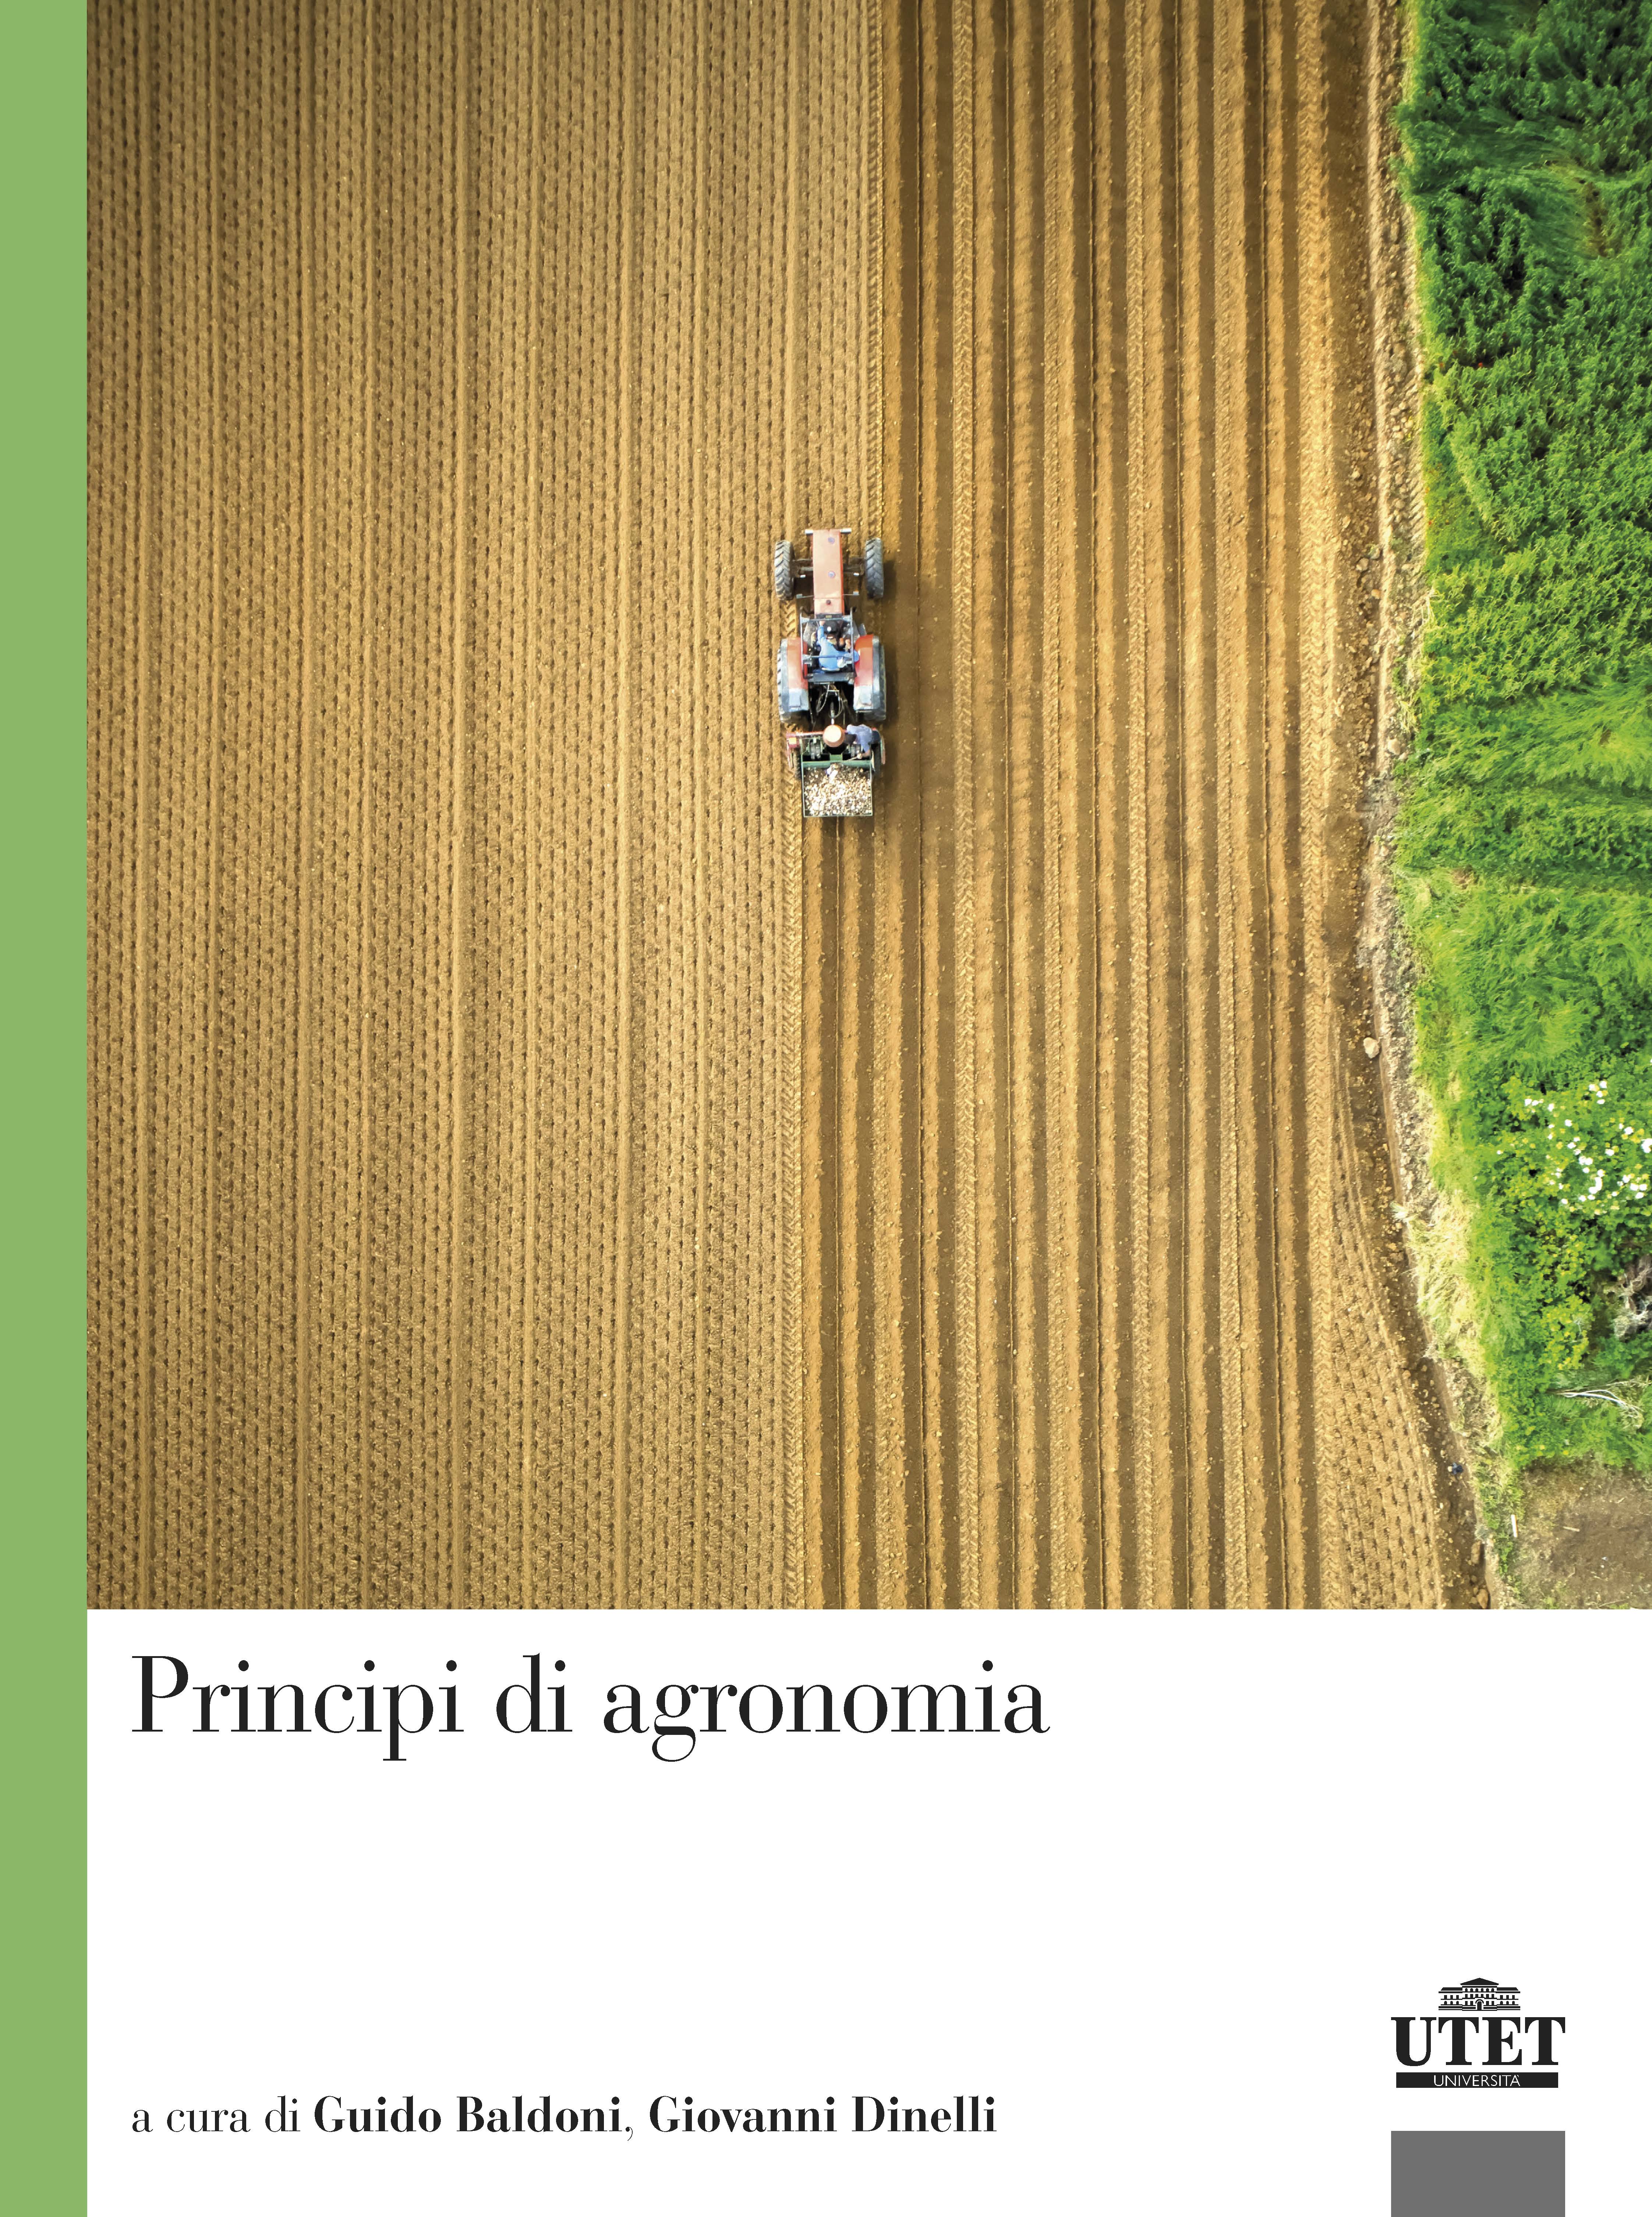 Principi di agronomia